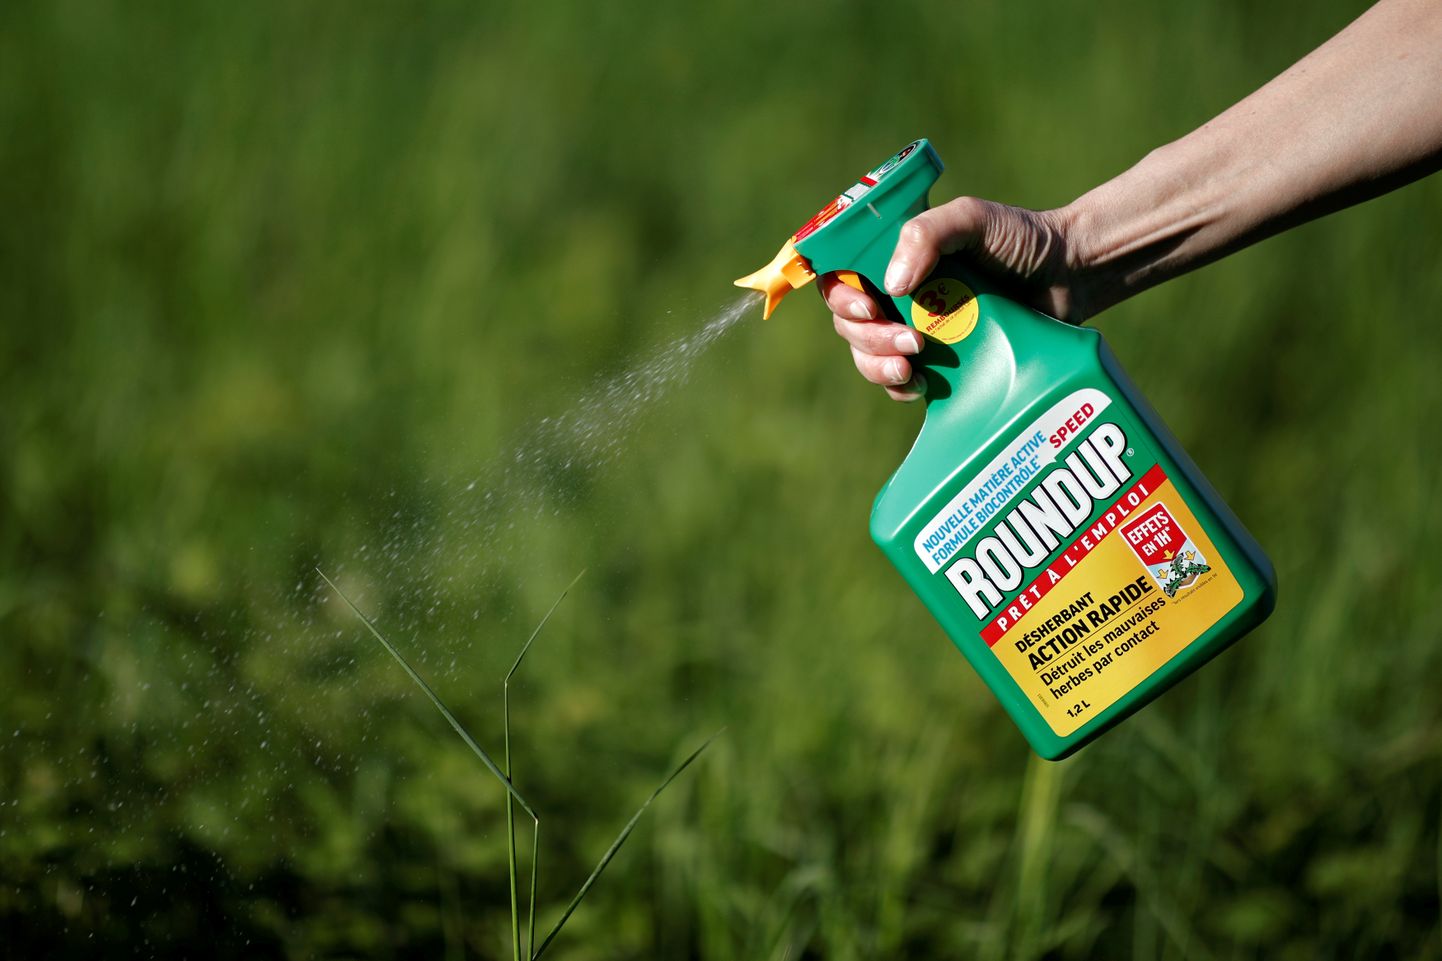 Суд присяжных в Калифорнии постановил, что Monsanto знала, о том, что средства от сорняков Roundup и RangerPro, содержащие глифосат, опасны для здоровья, но не предупредила покупателей.